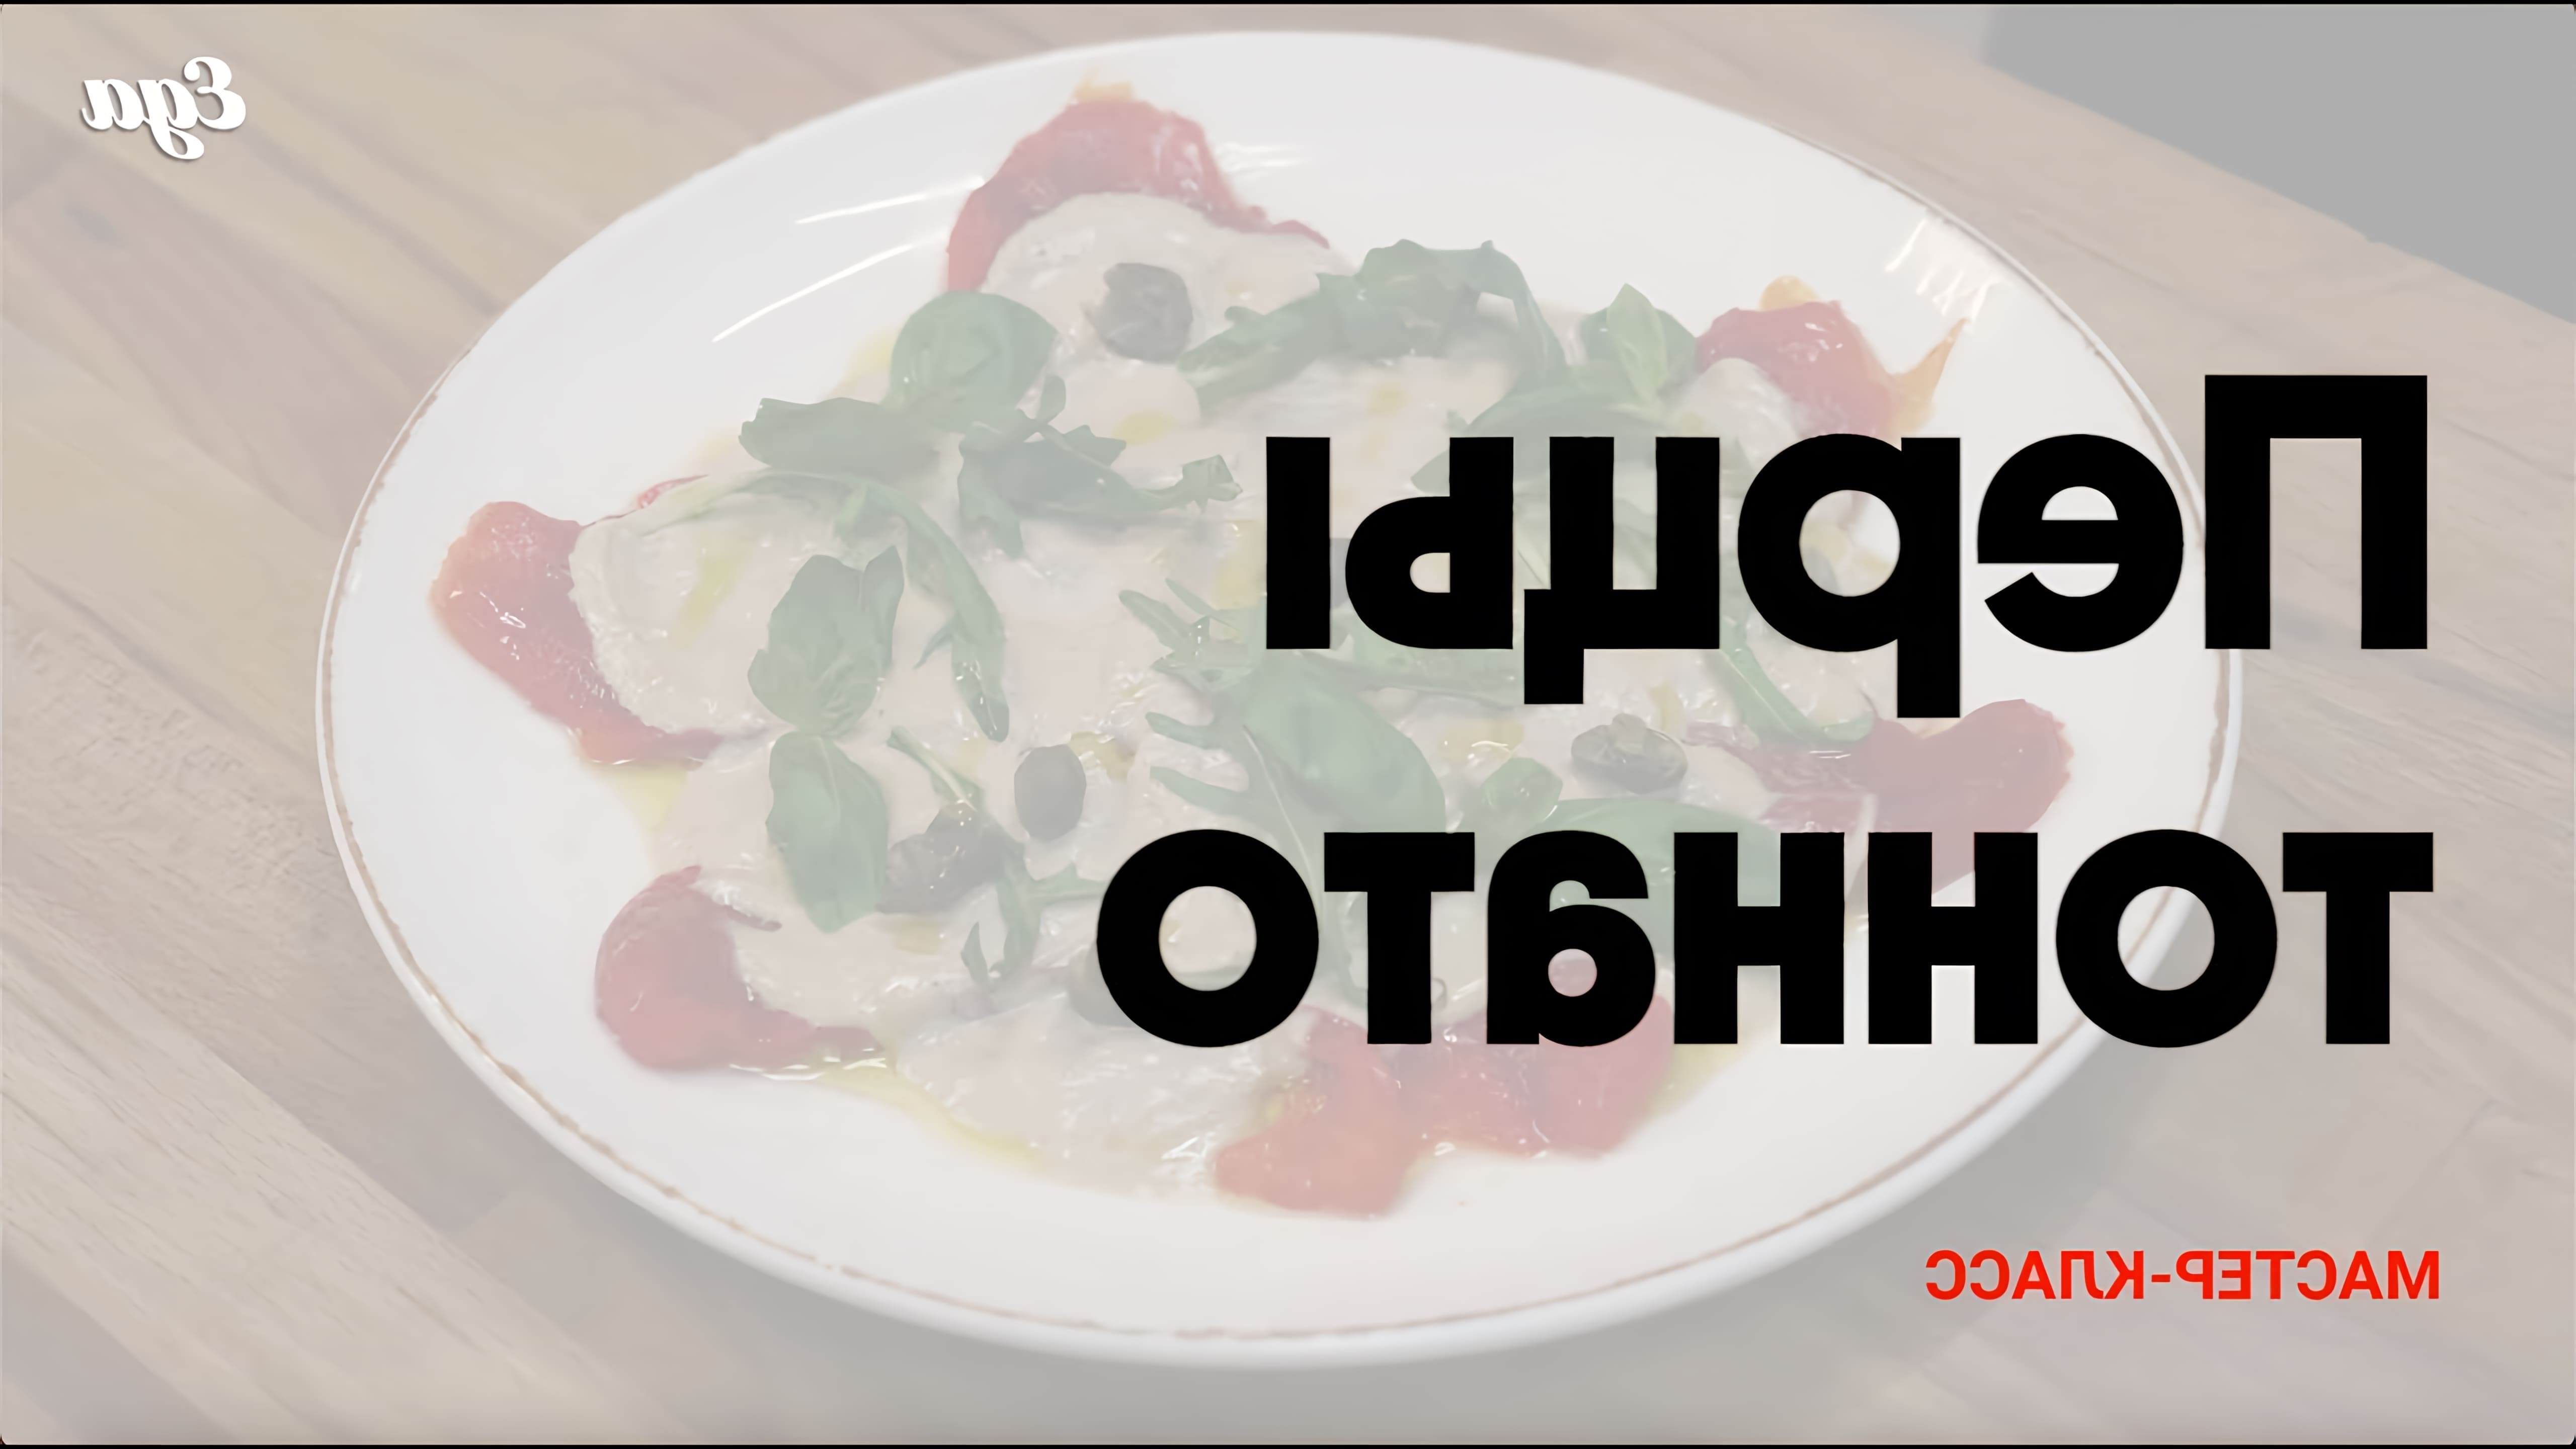 В этом видео шеф-повар Юрий Лебин из ресторана "Дом 16" показывает, как приготовить маринованные перцы под соусом тоннато